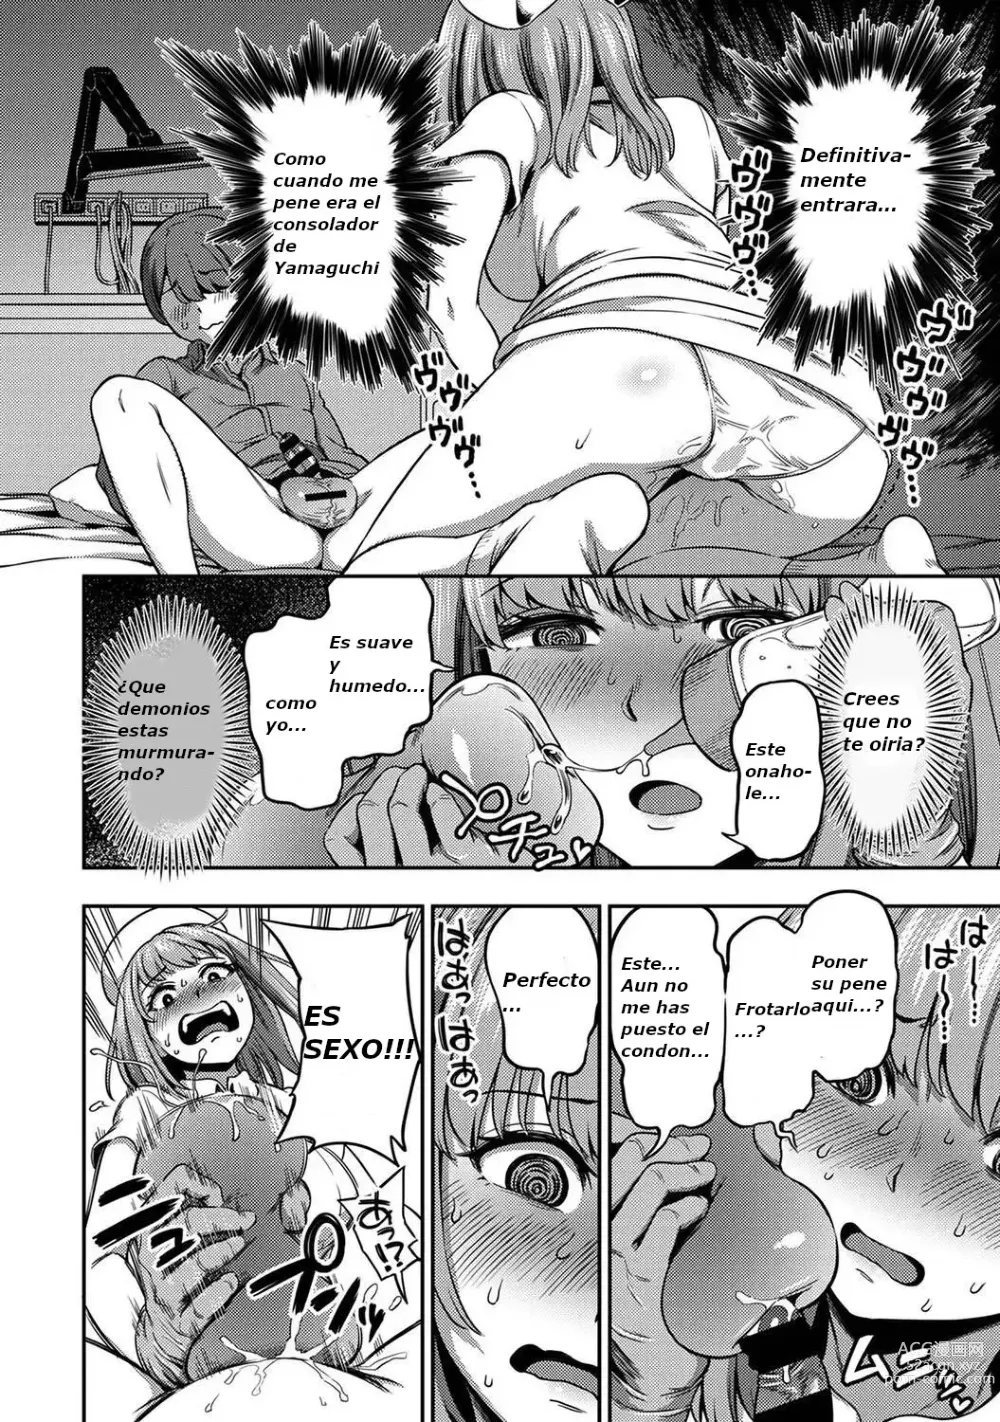 Page 9 of manga 